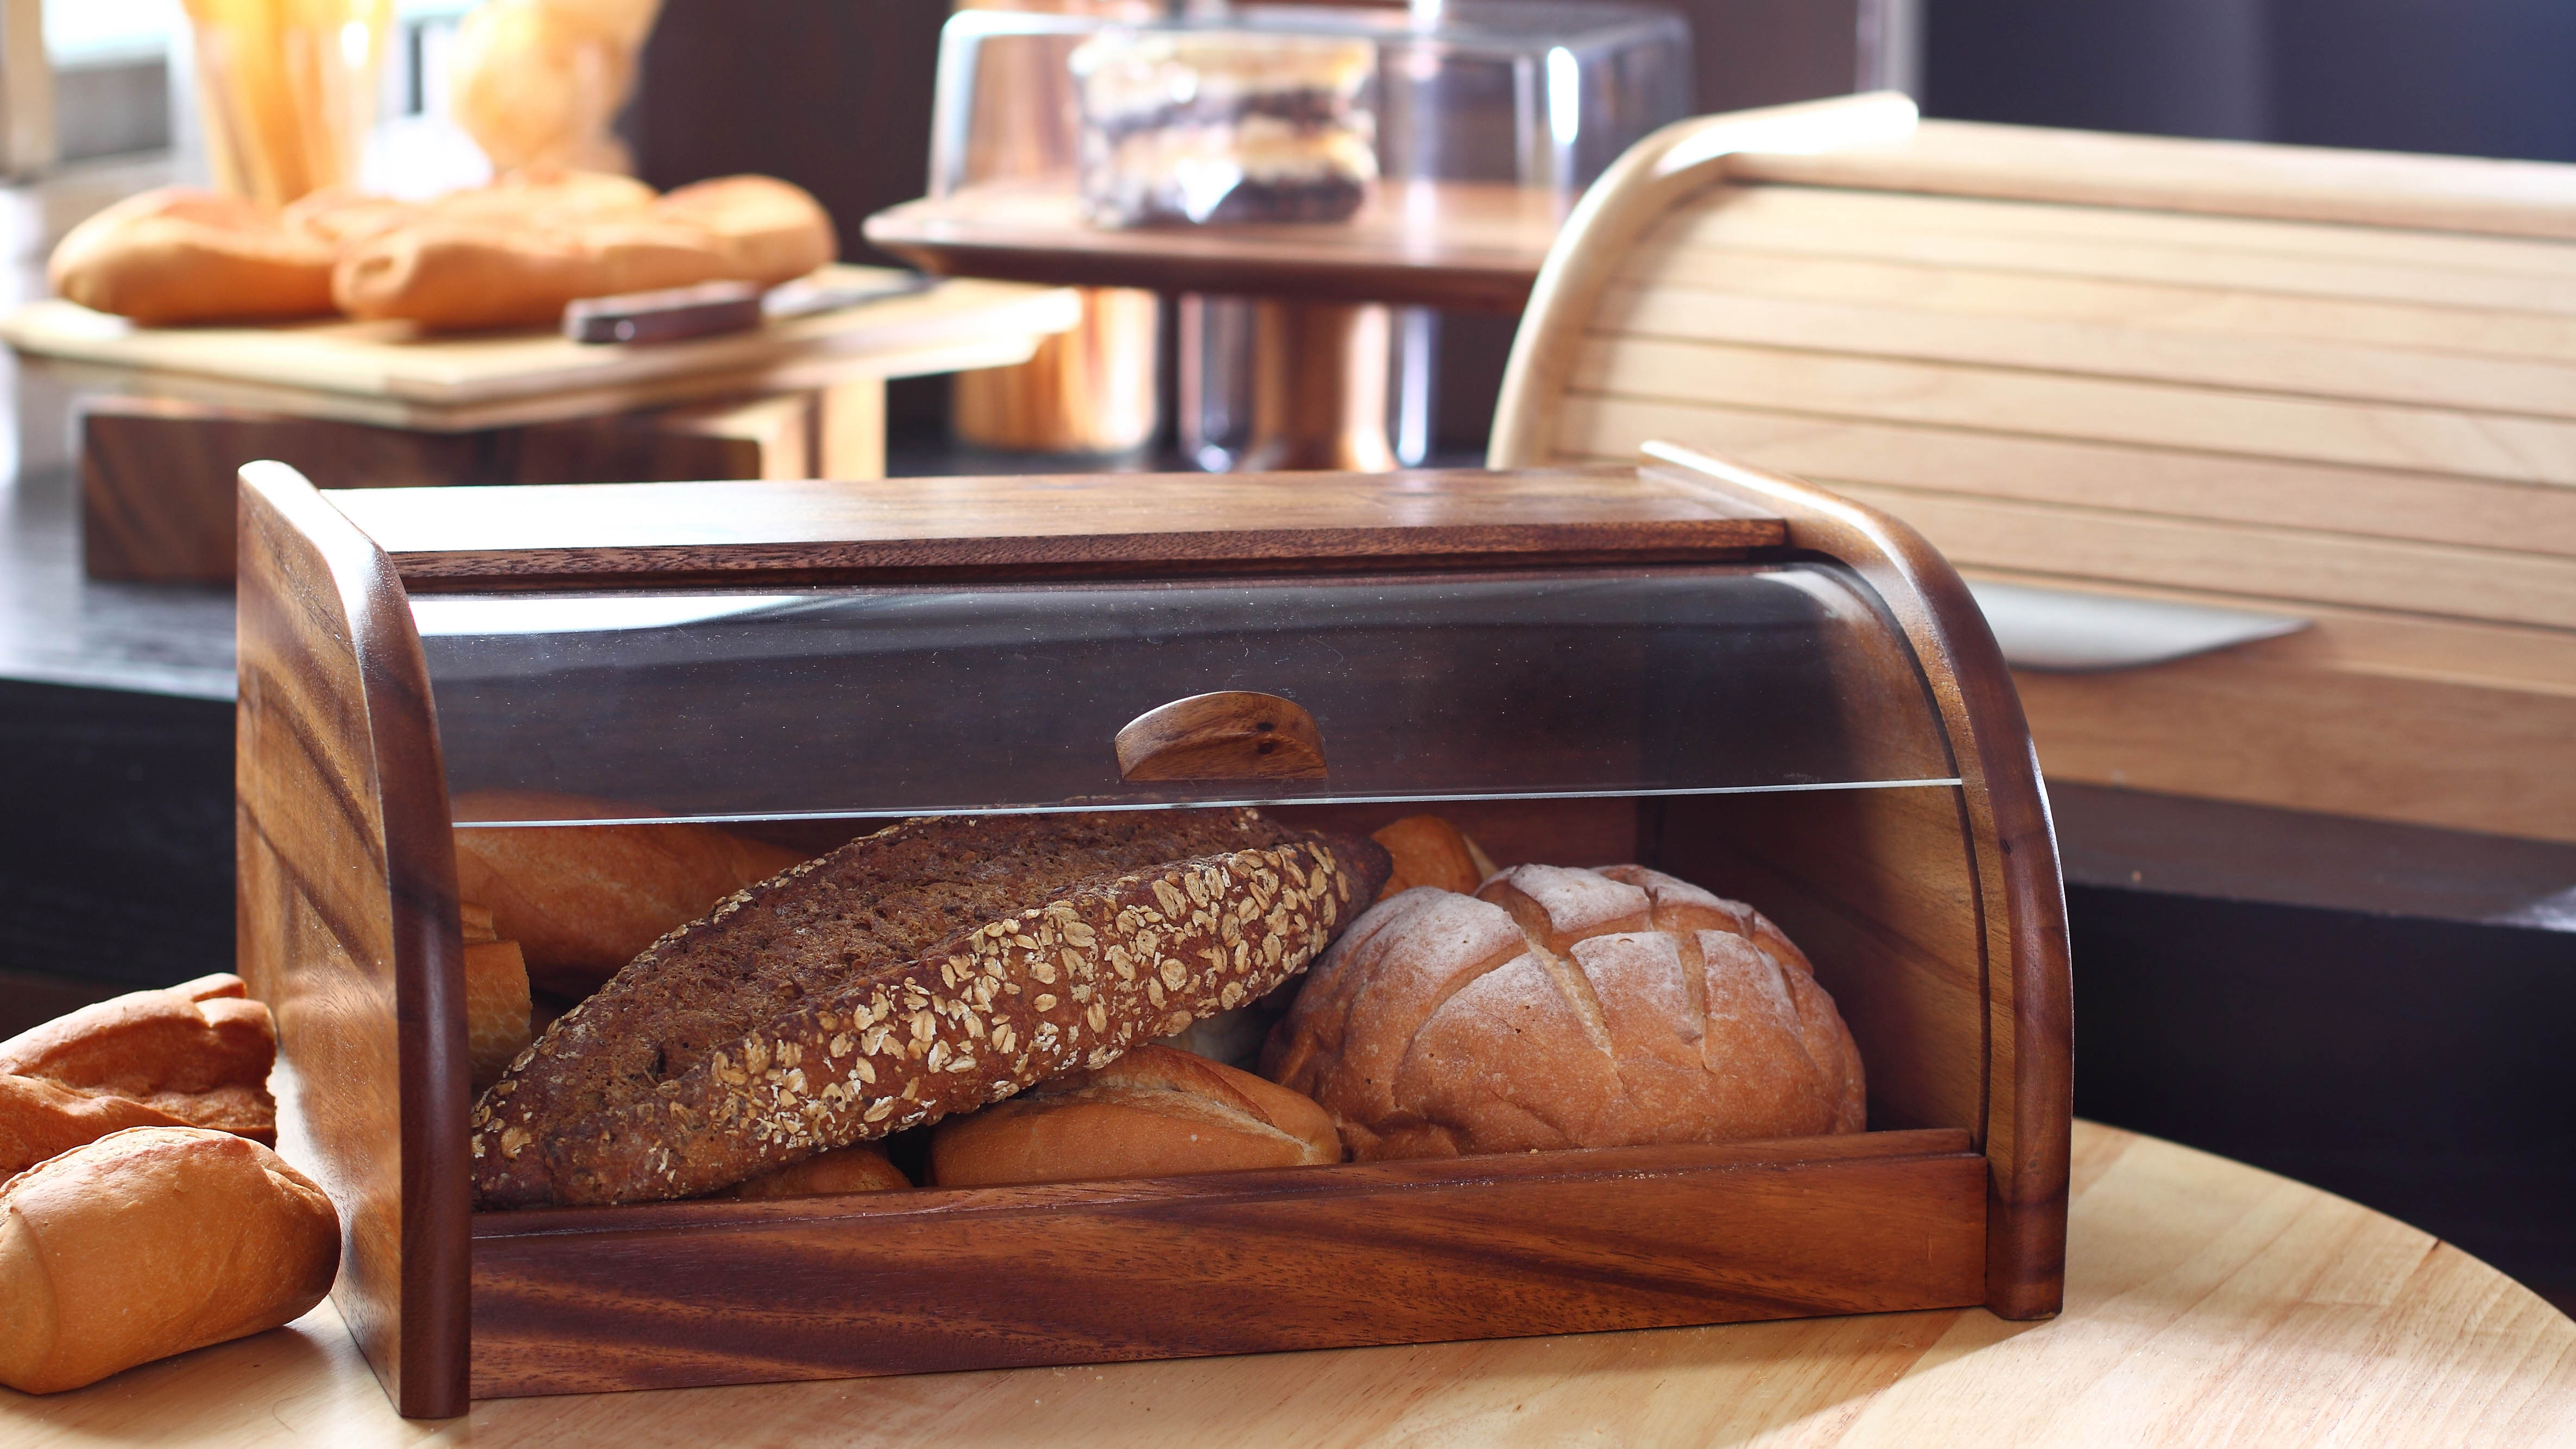 Hogazas de pan en una caja de pan